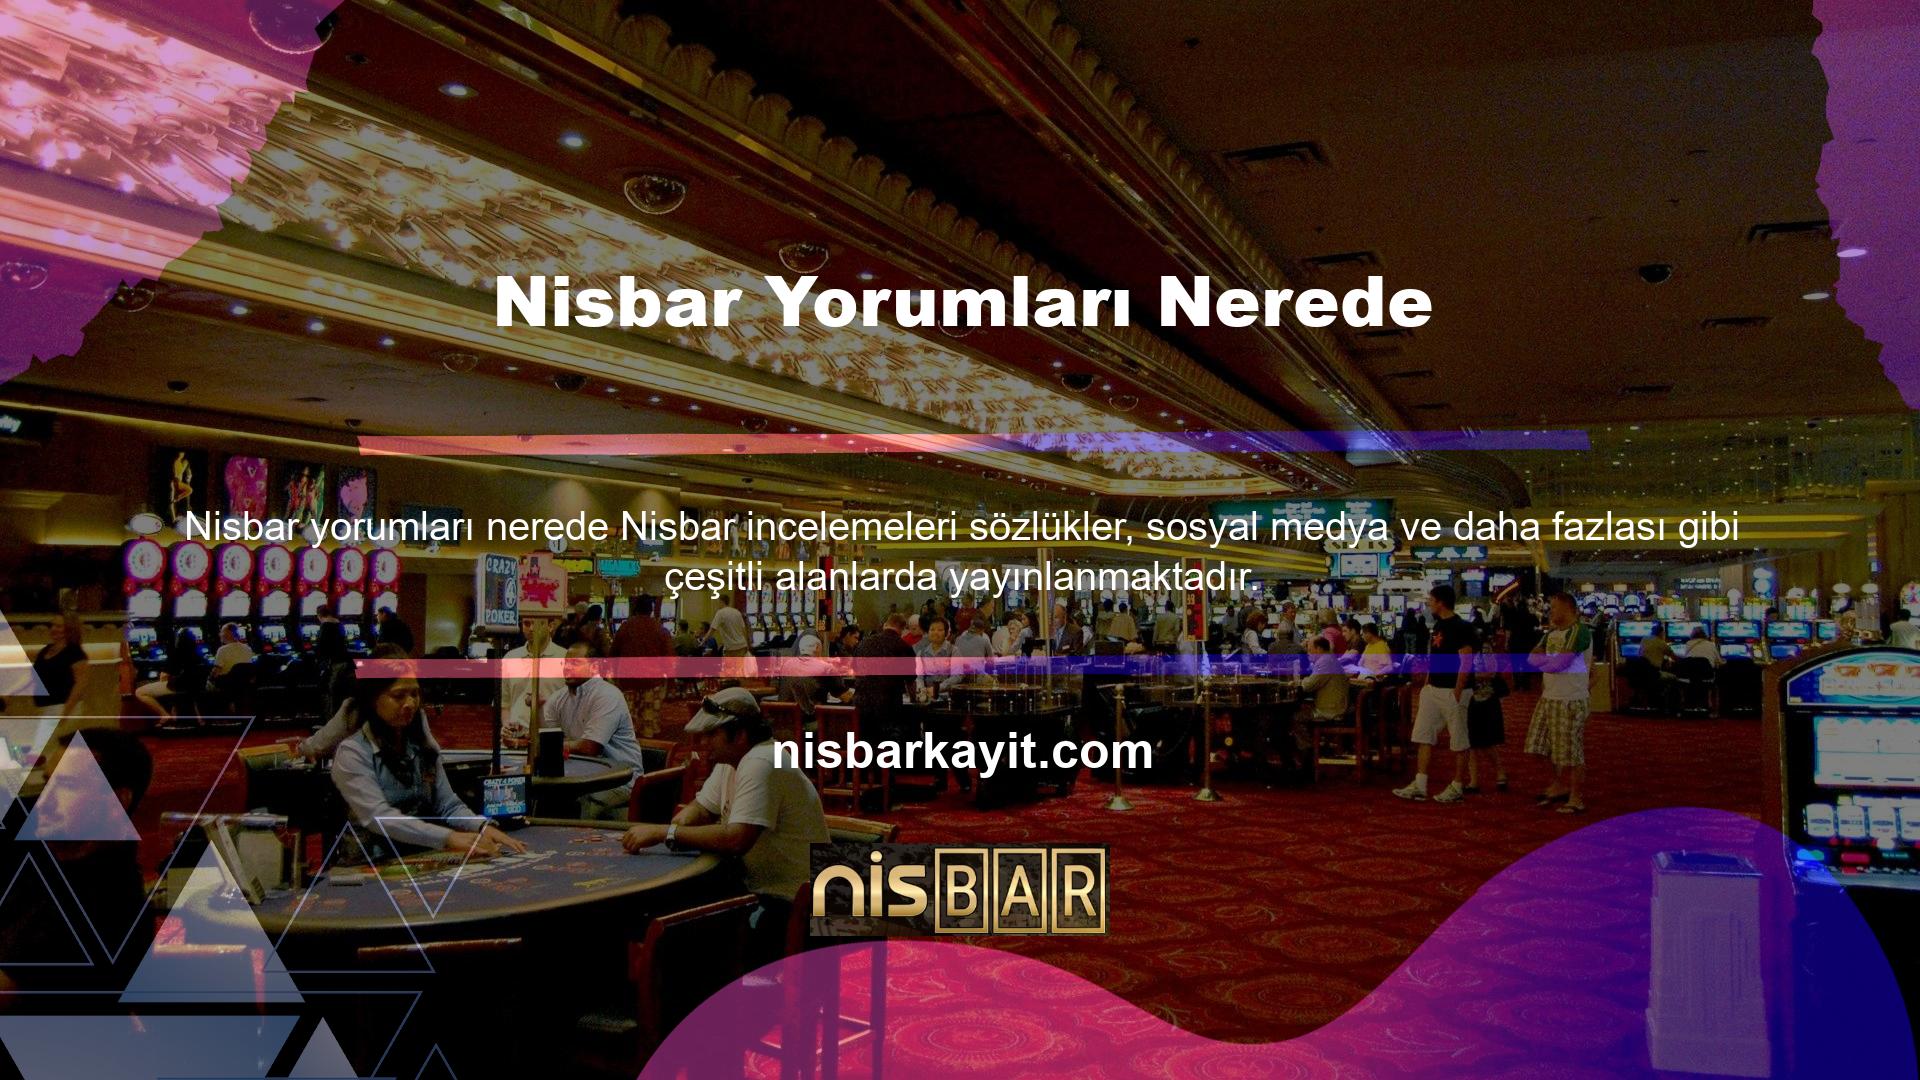 Nisbar Nasıl DeğerlendirirsinizNisbar Spor Bahisleri  Yorumları NeredeNisbar Firmasının favori oyun alanı spor bahisleridir